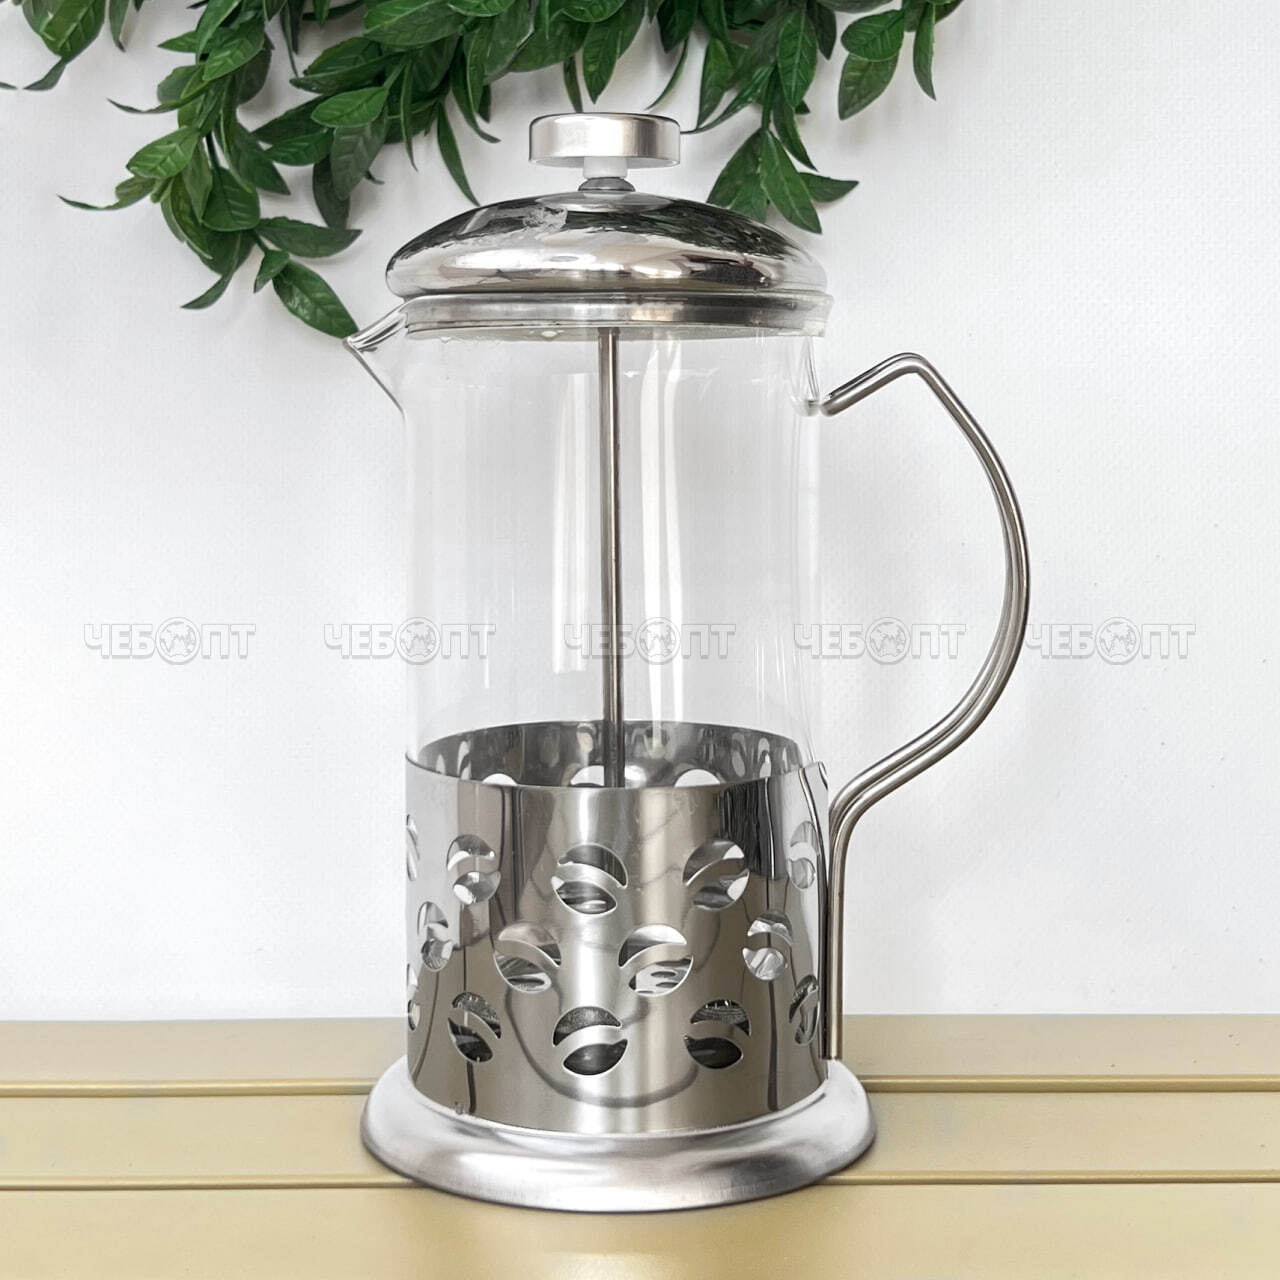 Чайник / кофейник френч-пресс 600 мл жаропрочное стекло, корпус из нержавеющей стали, стальной фильтр арт. B003-600ML, 260080 $ [40] GOODSEE. ЧЕБОПТ.